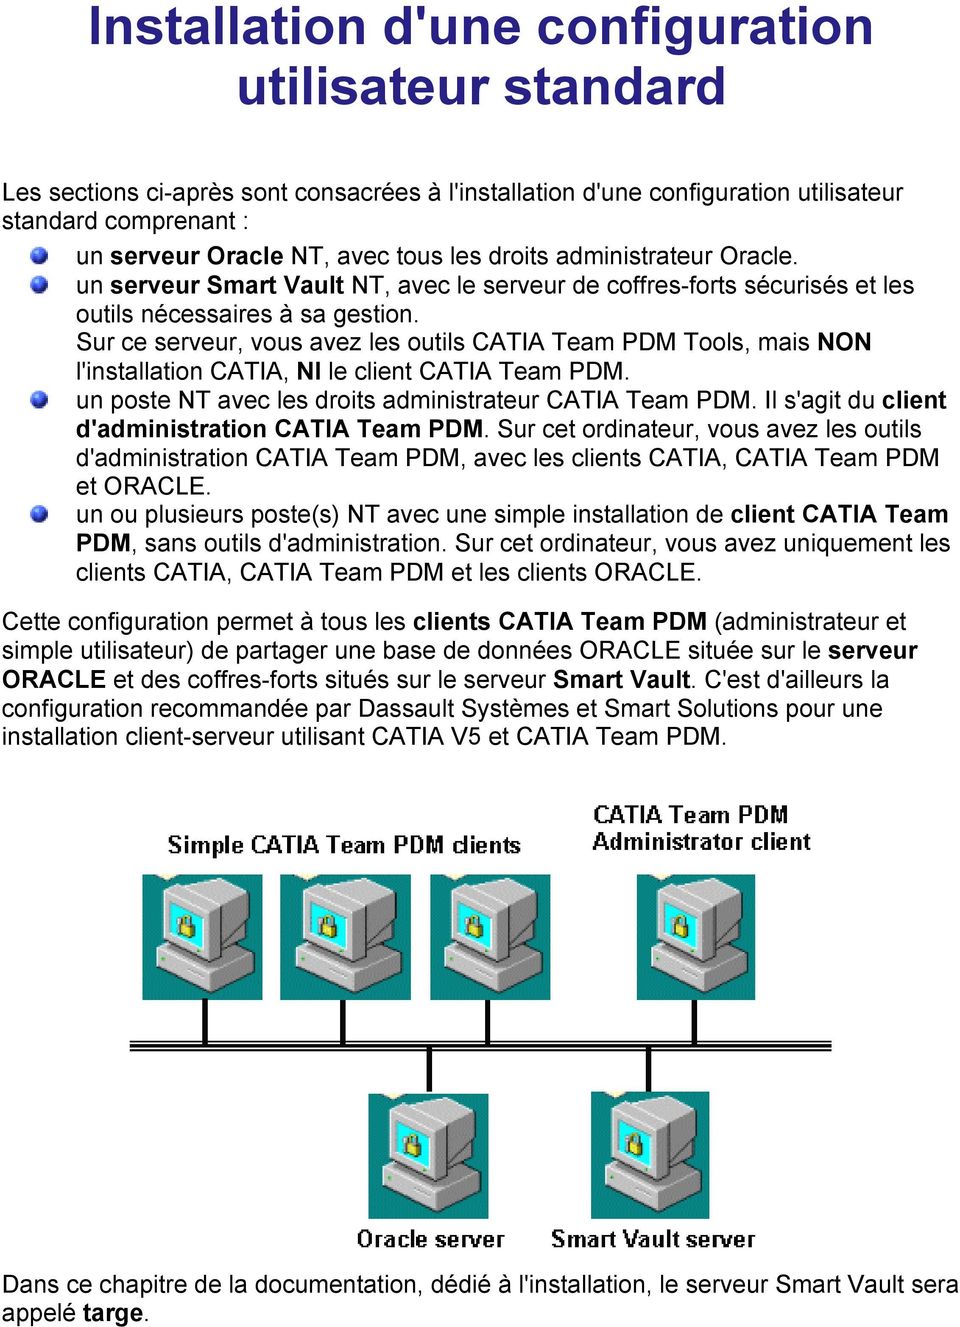 Sur ce serveur, vous avez les outils CATIA Team PDM Tools, mais NON l'installation CATIA, NI le client CATIA Team PDM. un poste NT avec les droits administrateur CATIA Team PDM.